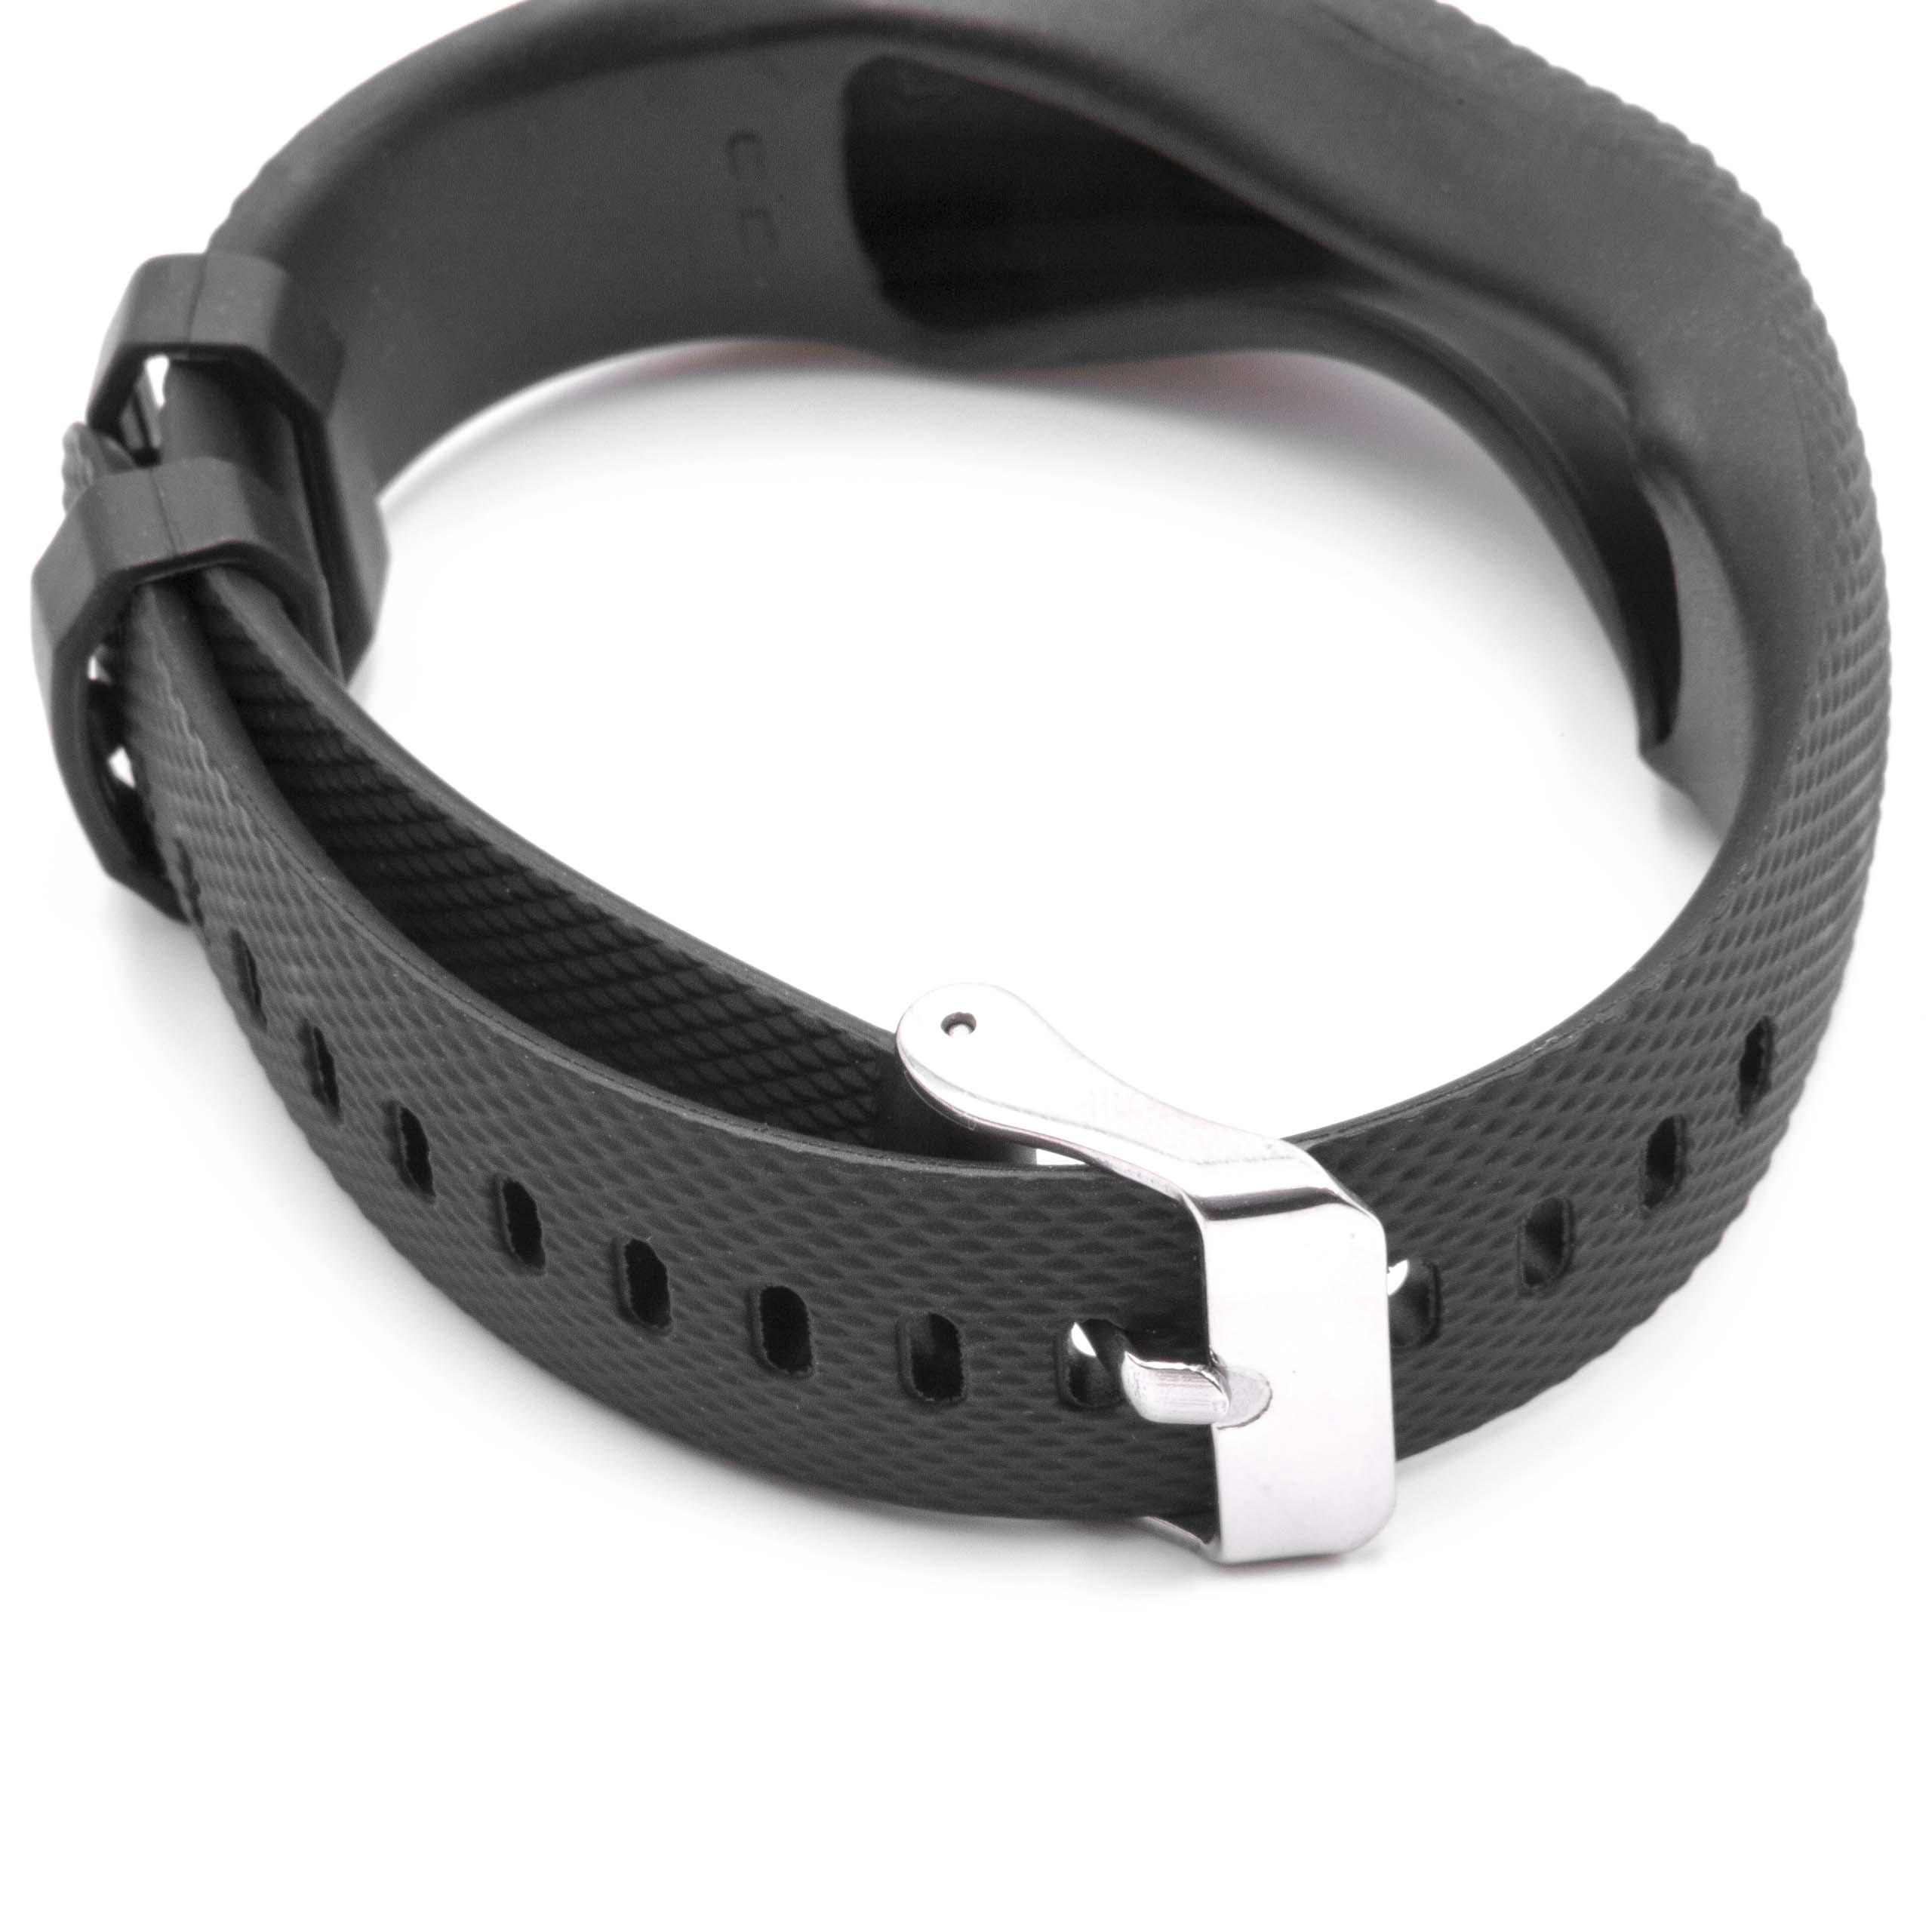 Armband für Garmin Vivofit Smartwatch - 24,5 cm lang, 19,5mm breit, schwarz